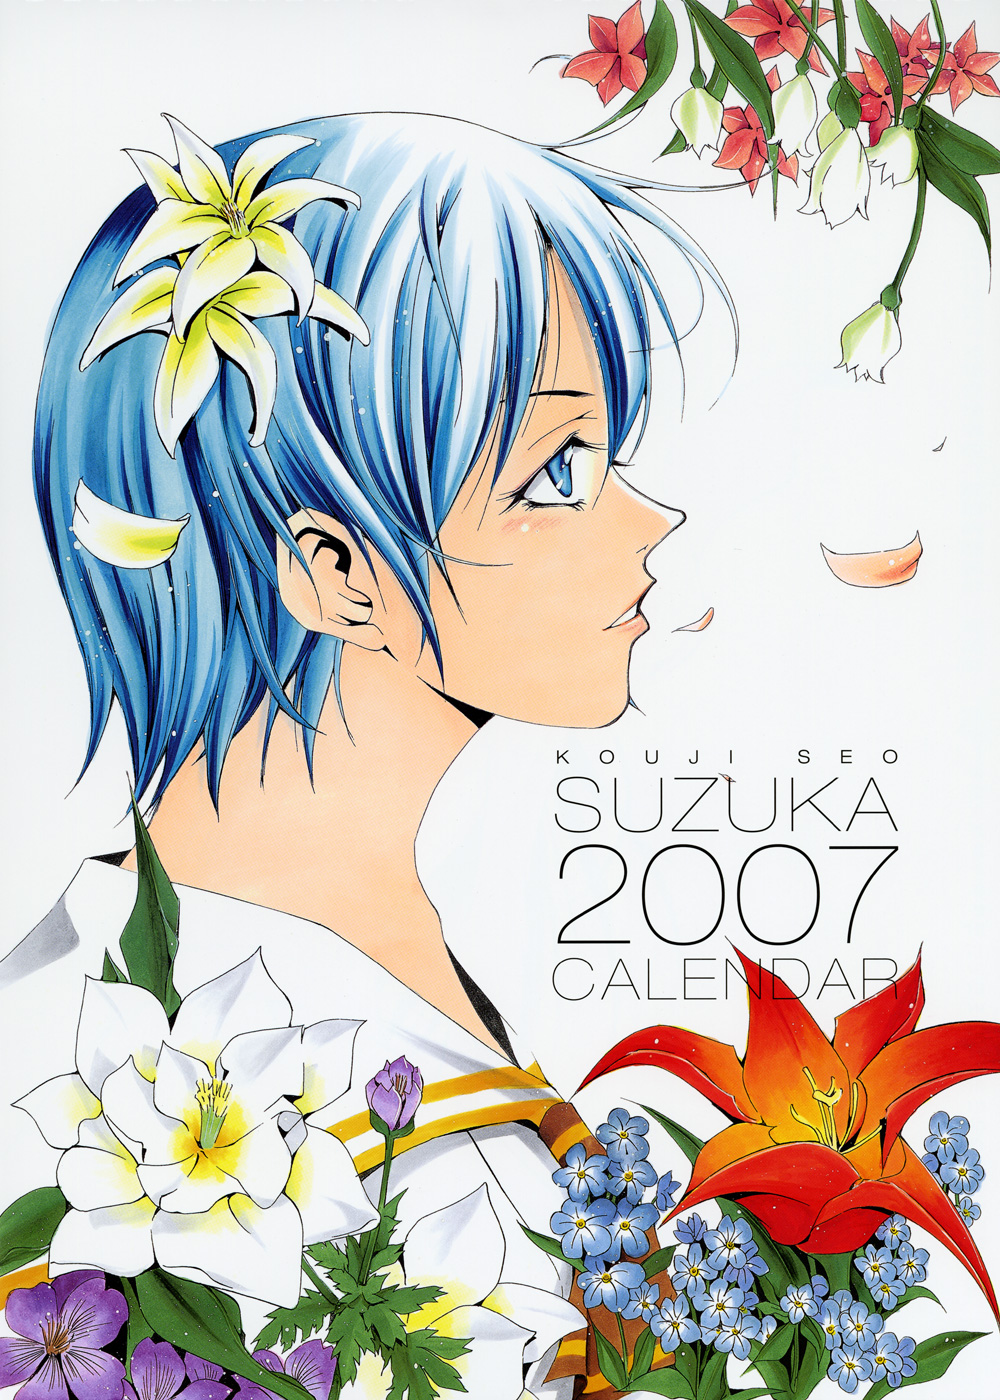 Imagen en alta Calidad del Calendario Suzuka 2007